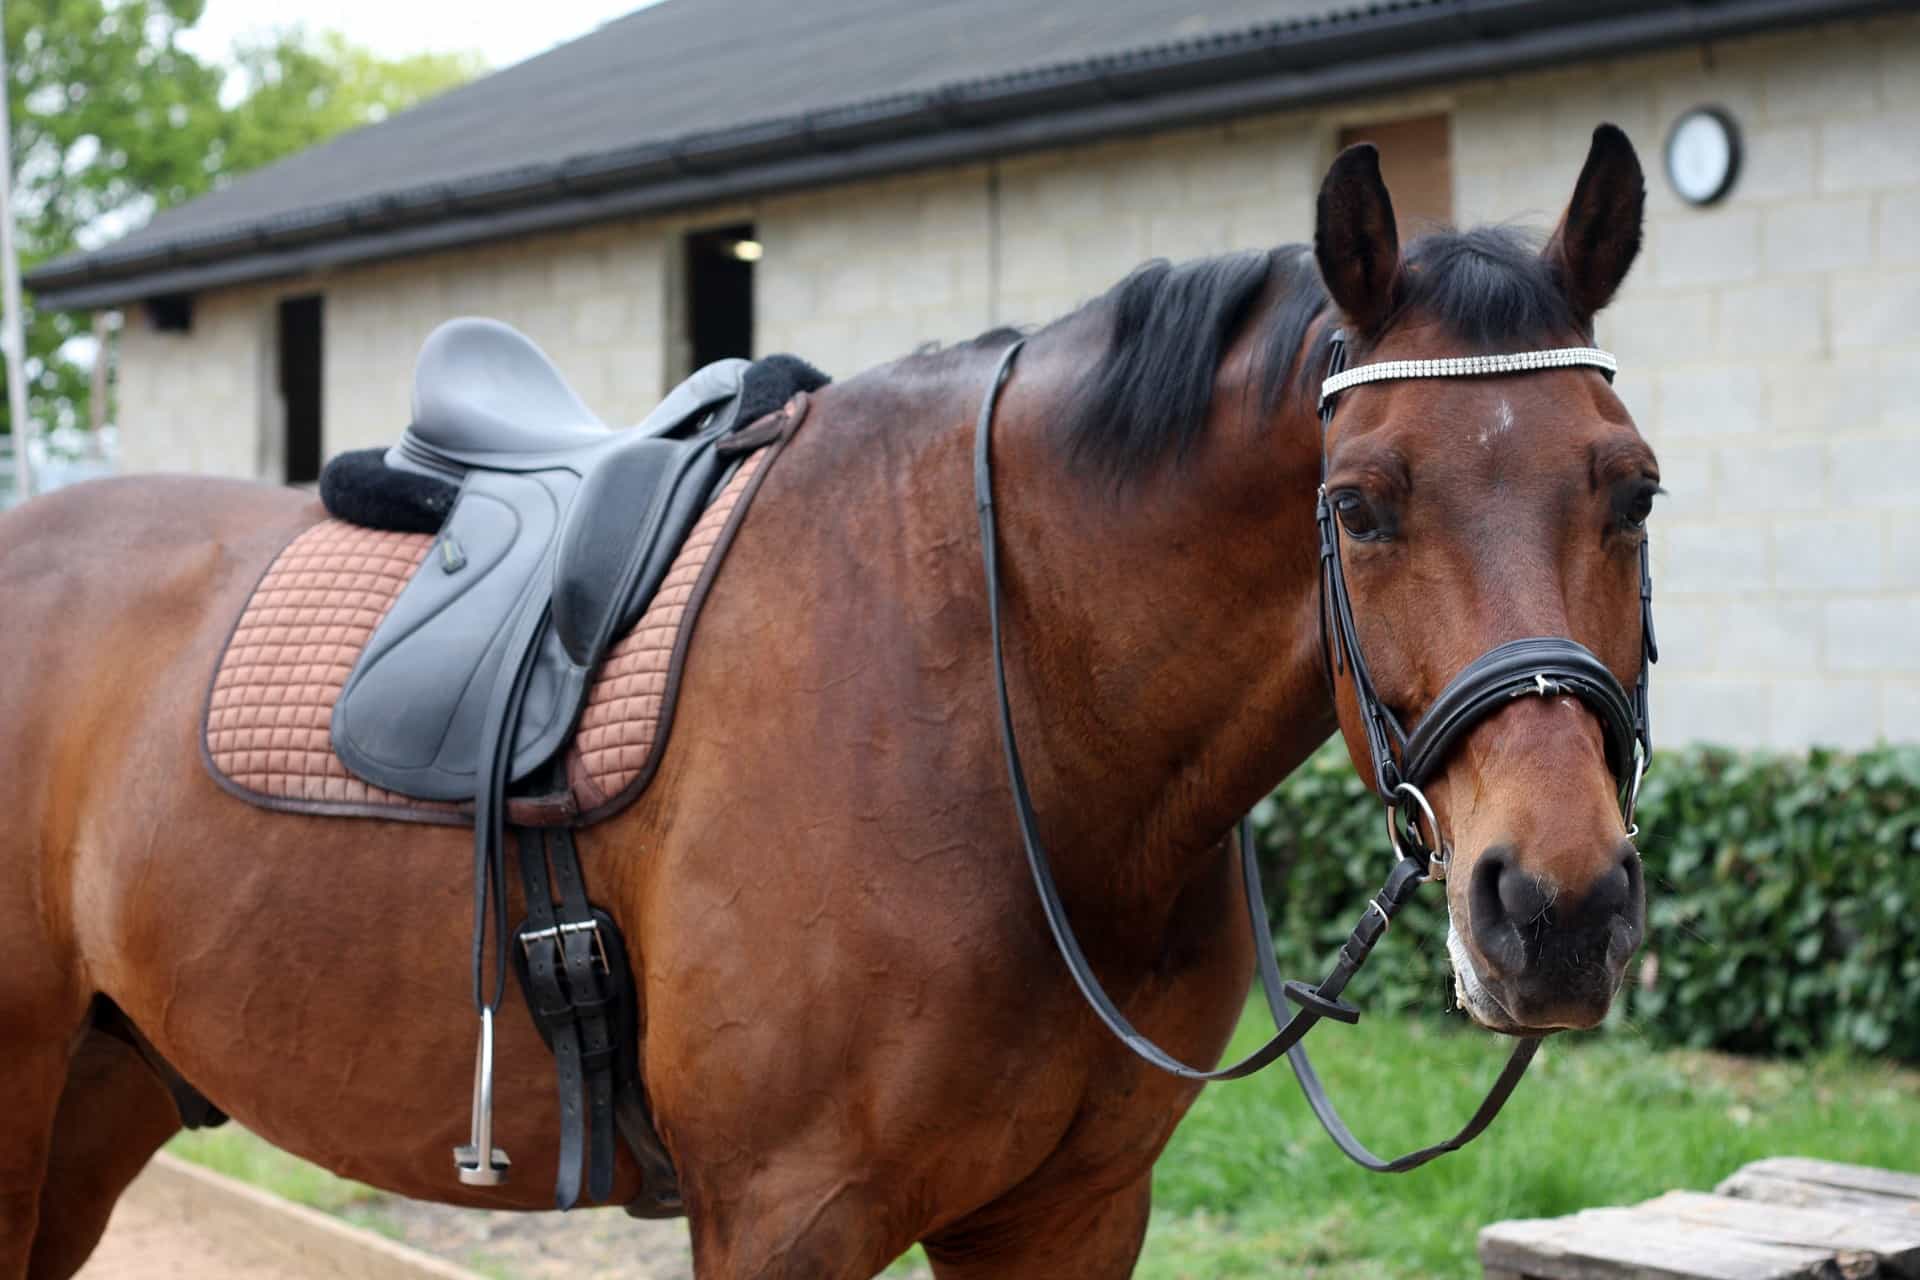 Balck saddle on horse